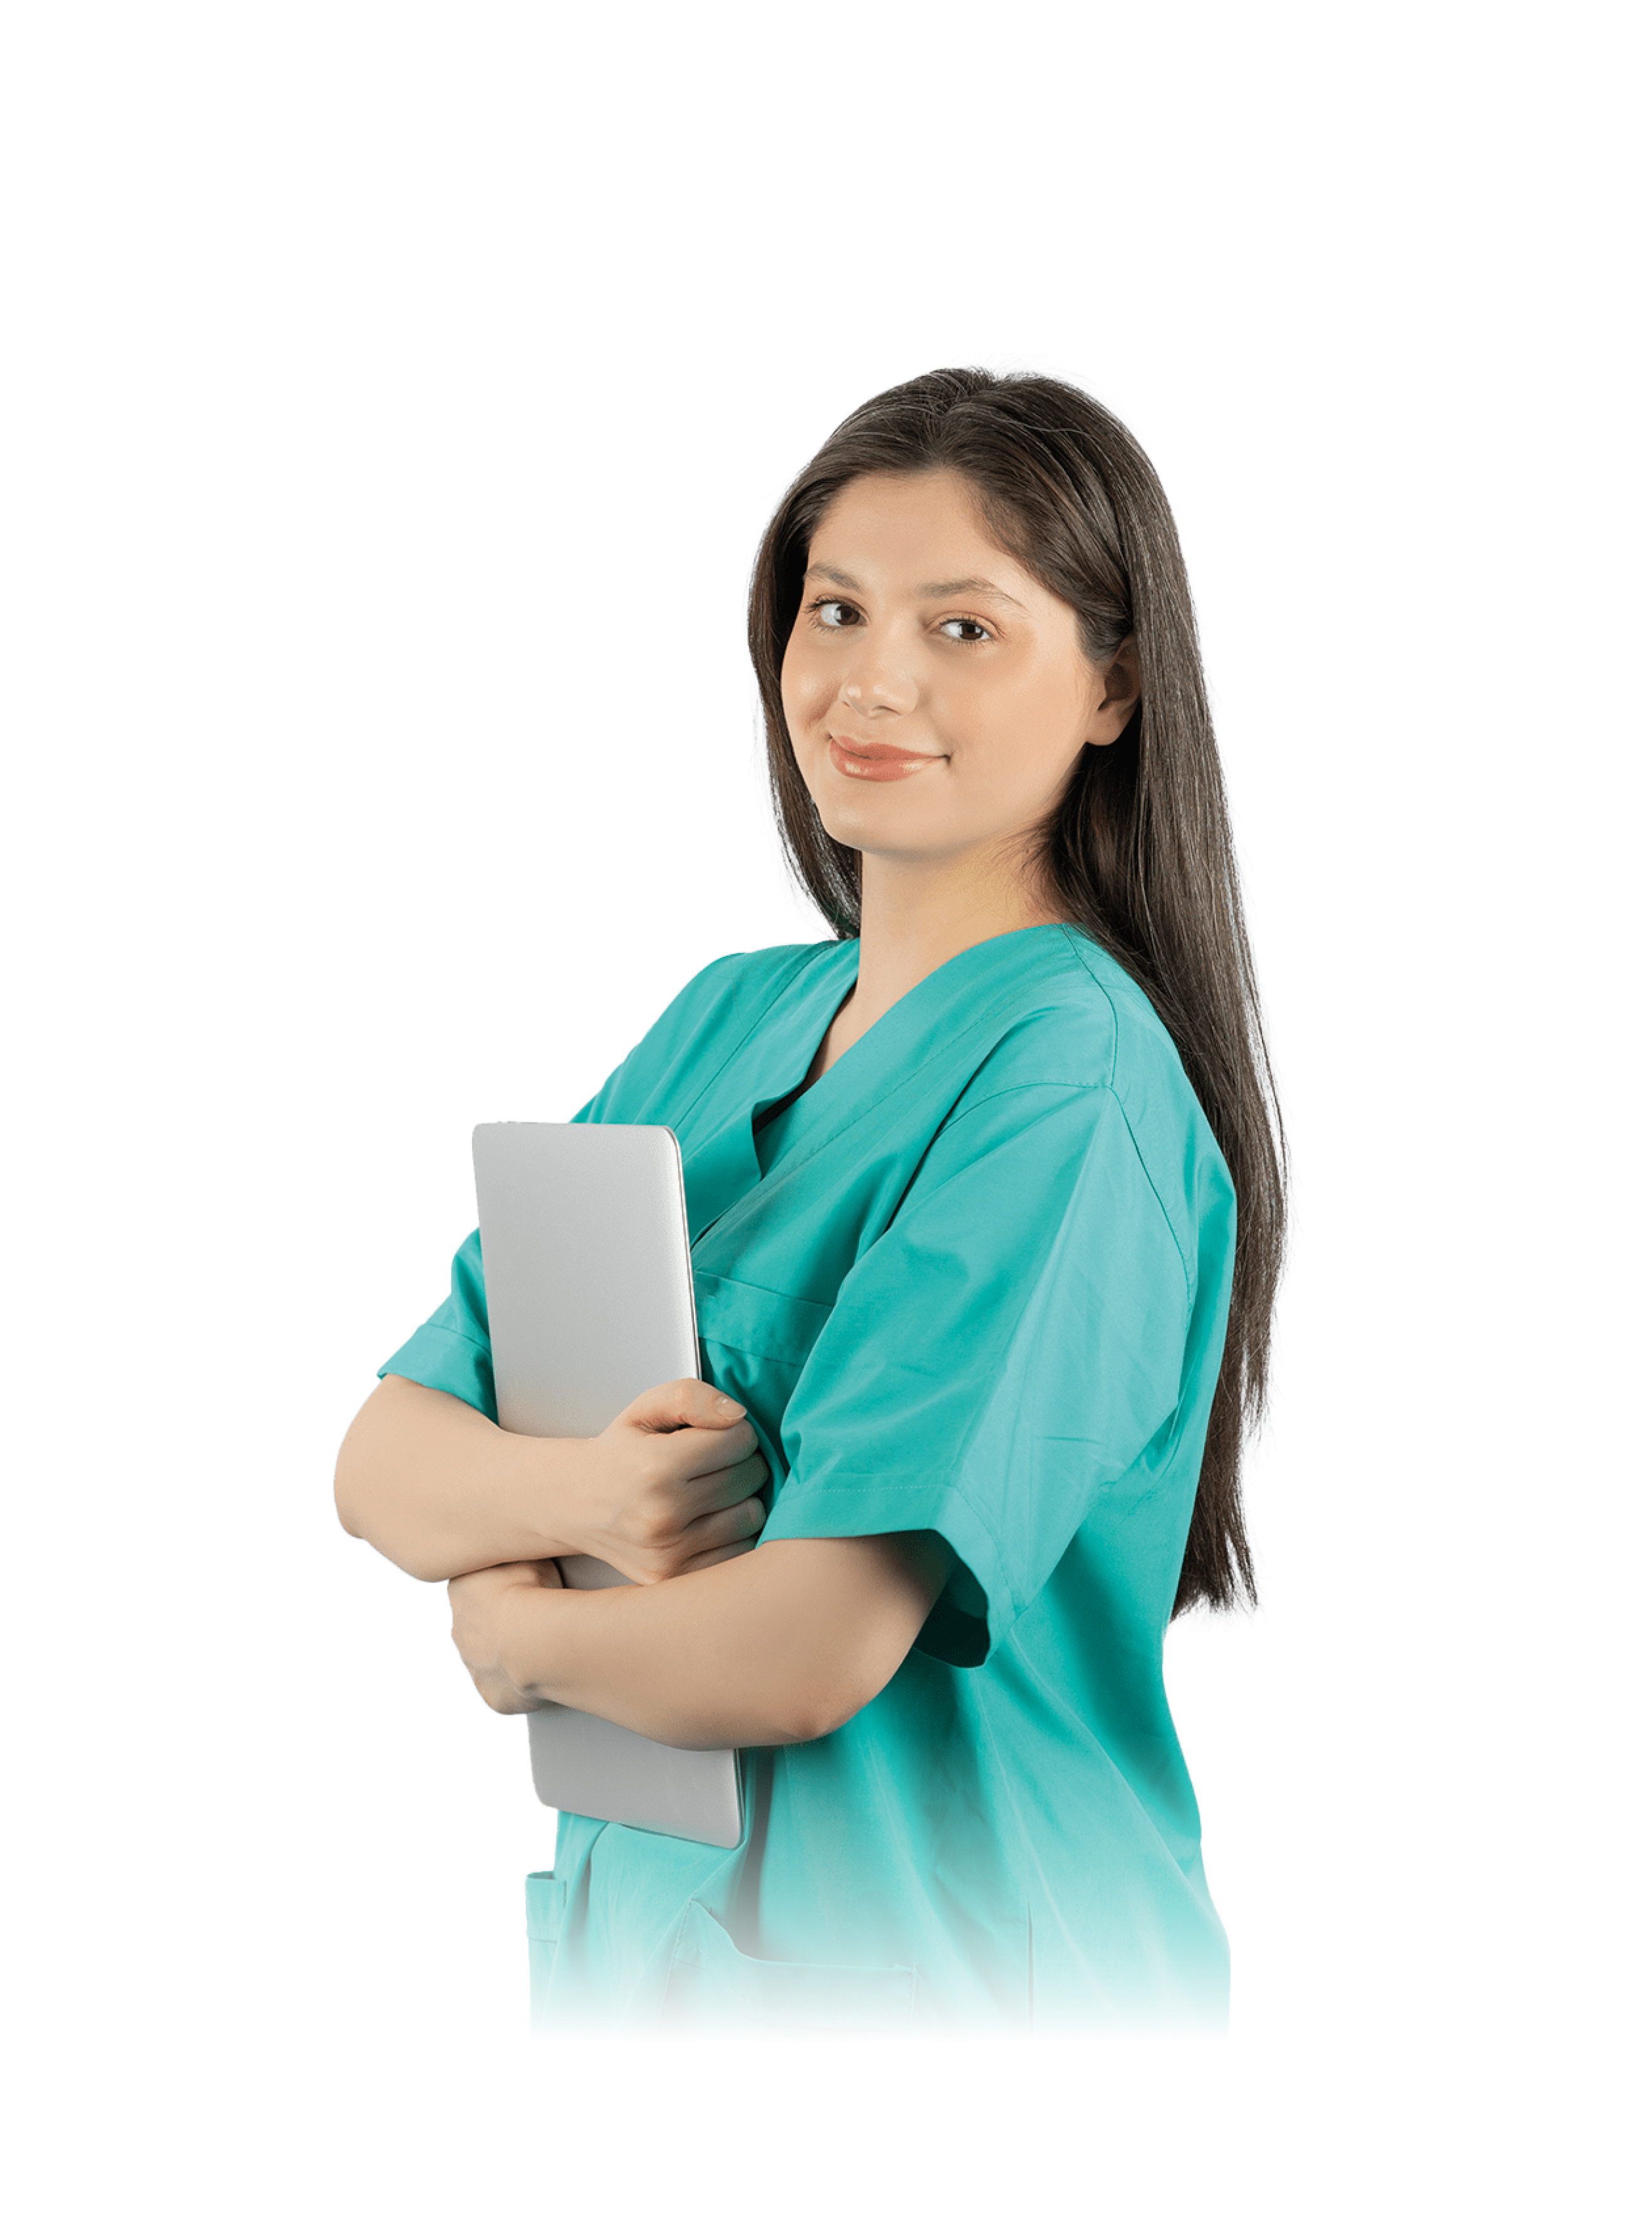 Verpleegkundige in turquoise uniform met tablet, symboliseert professionele zorg in de MBO Verpleegkundige opleiding.